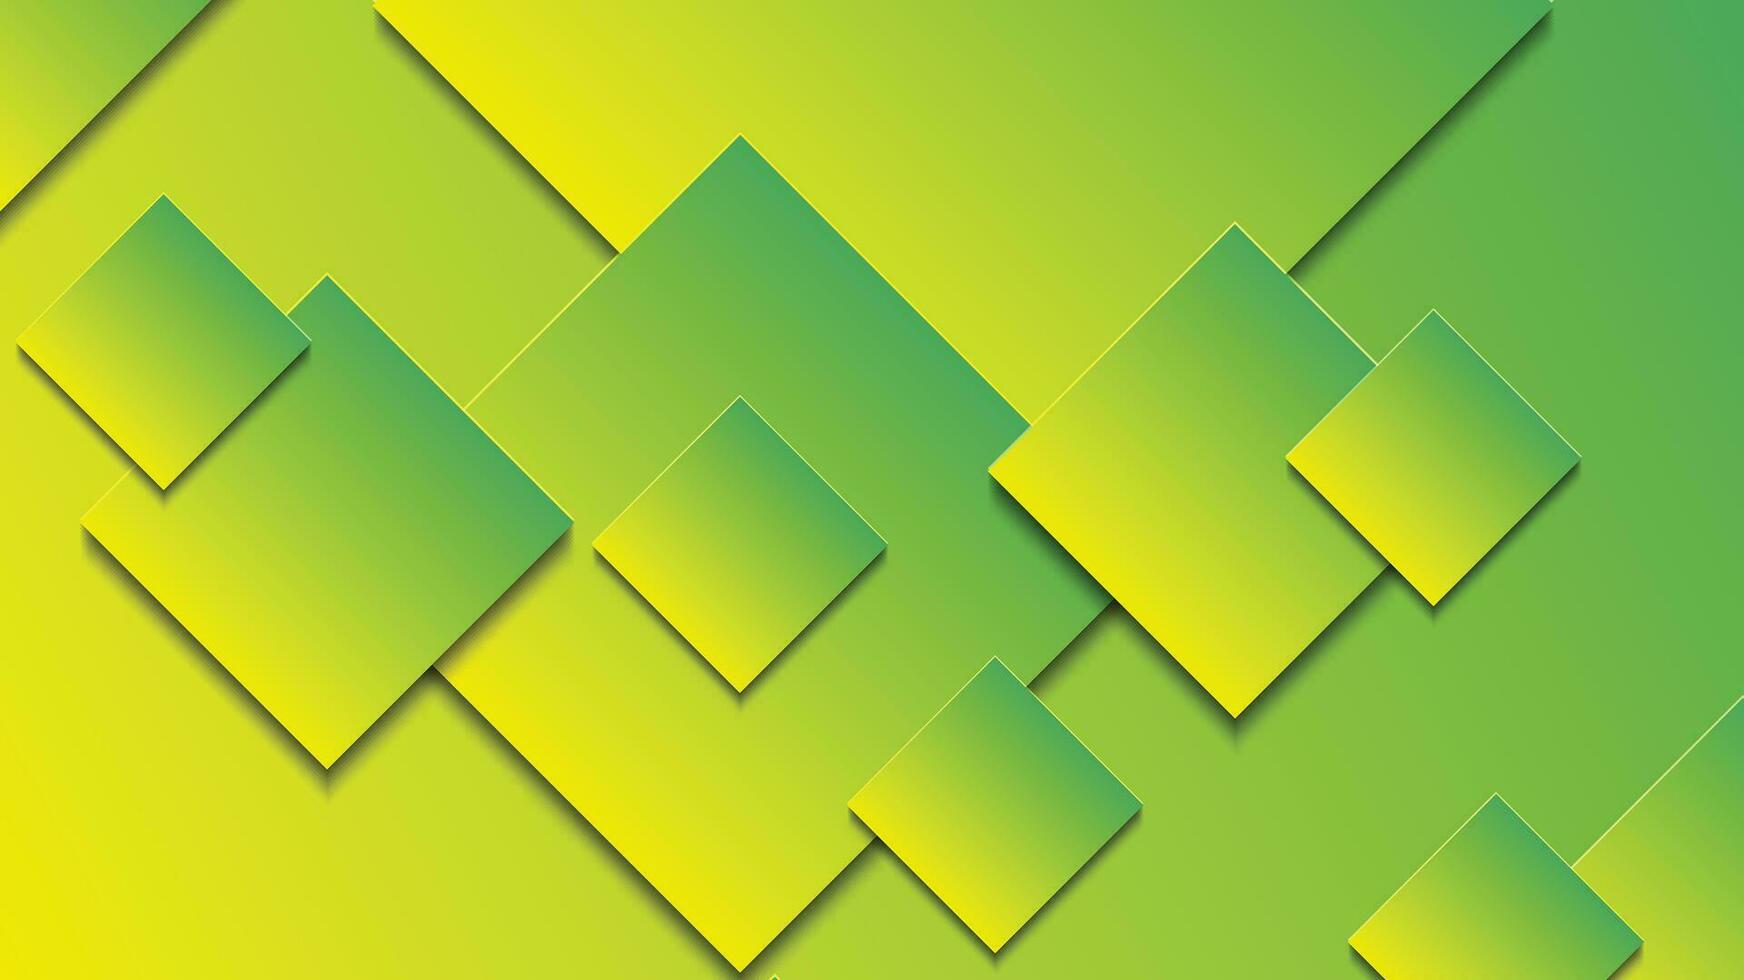 abstract groen en geel helling achtergrond met rechthoek lijnen vector